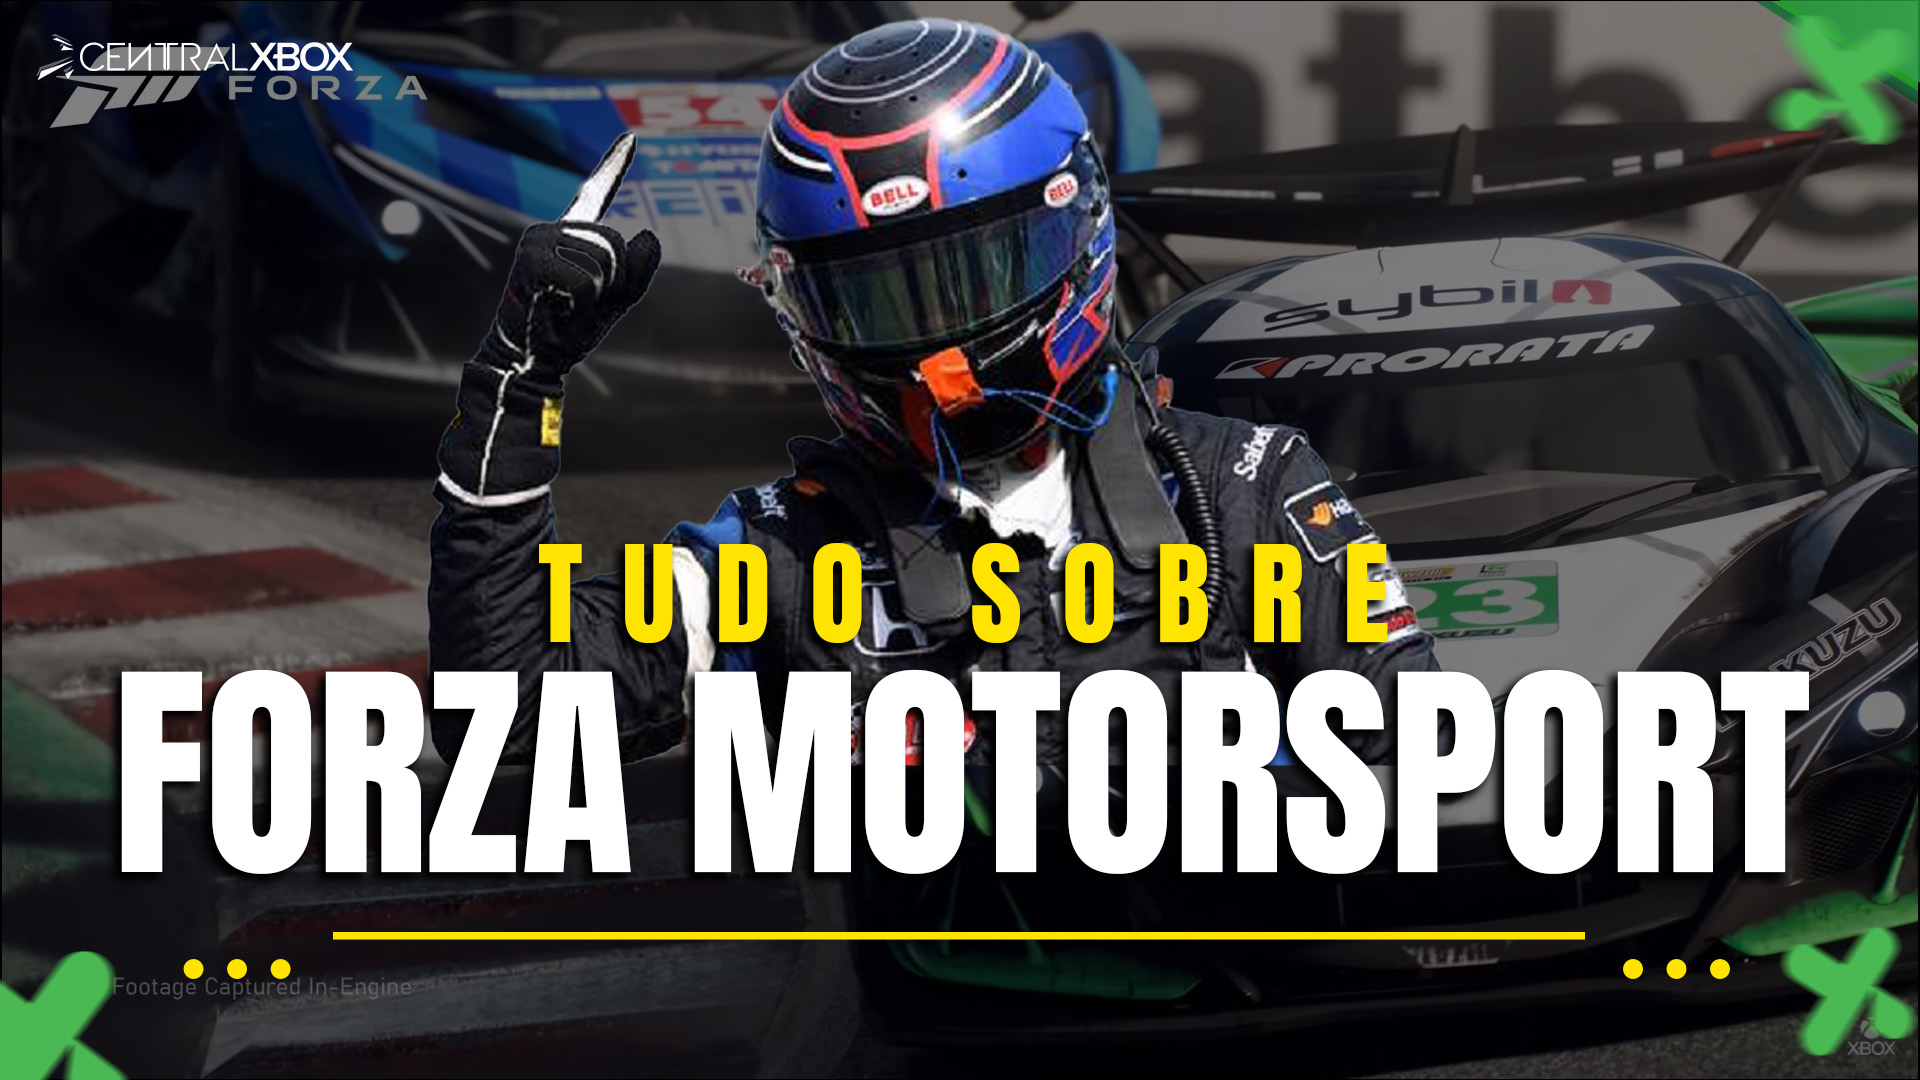 Novo Forza Motorsport chega em outubro e tem pré-venda aberta